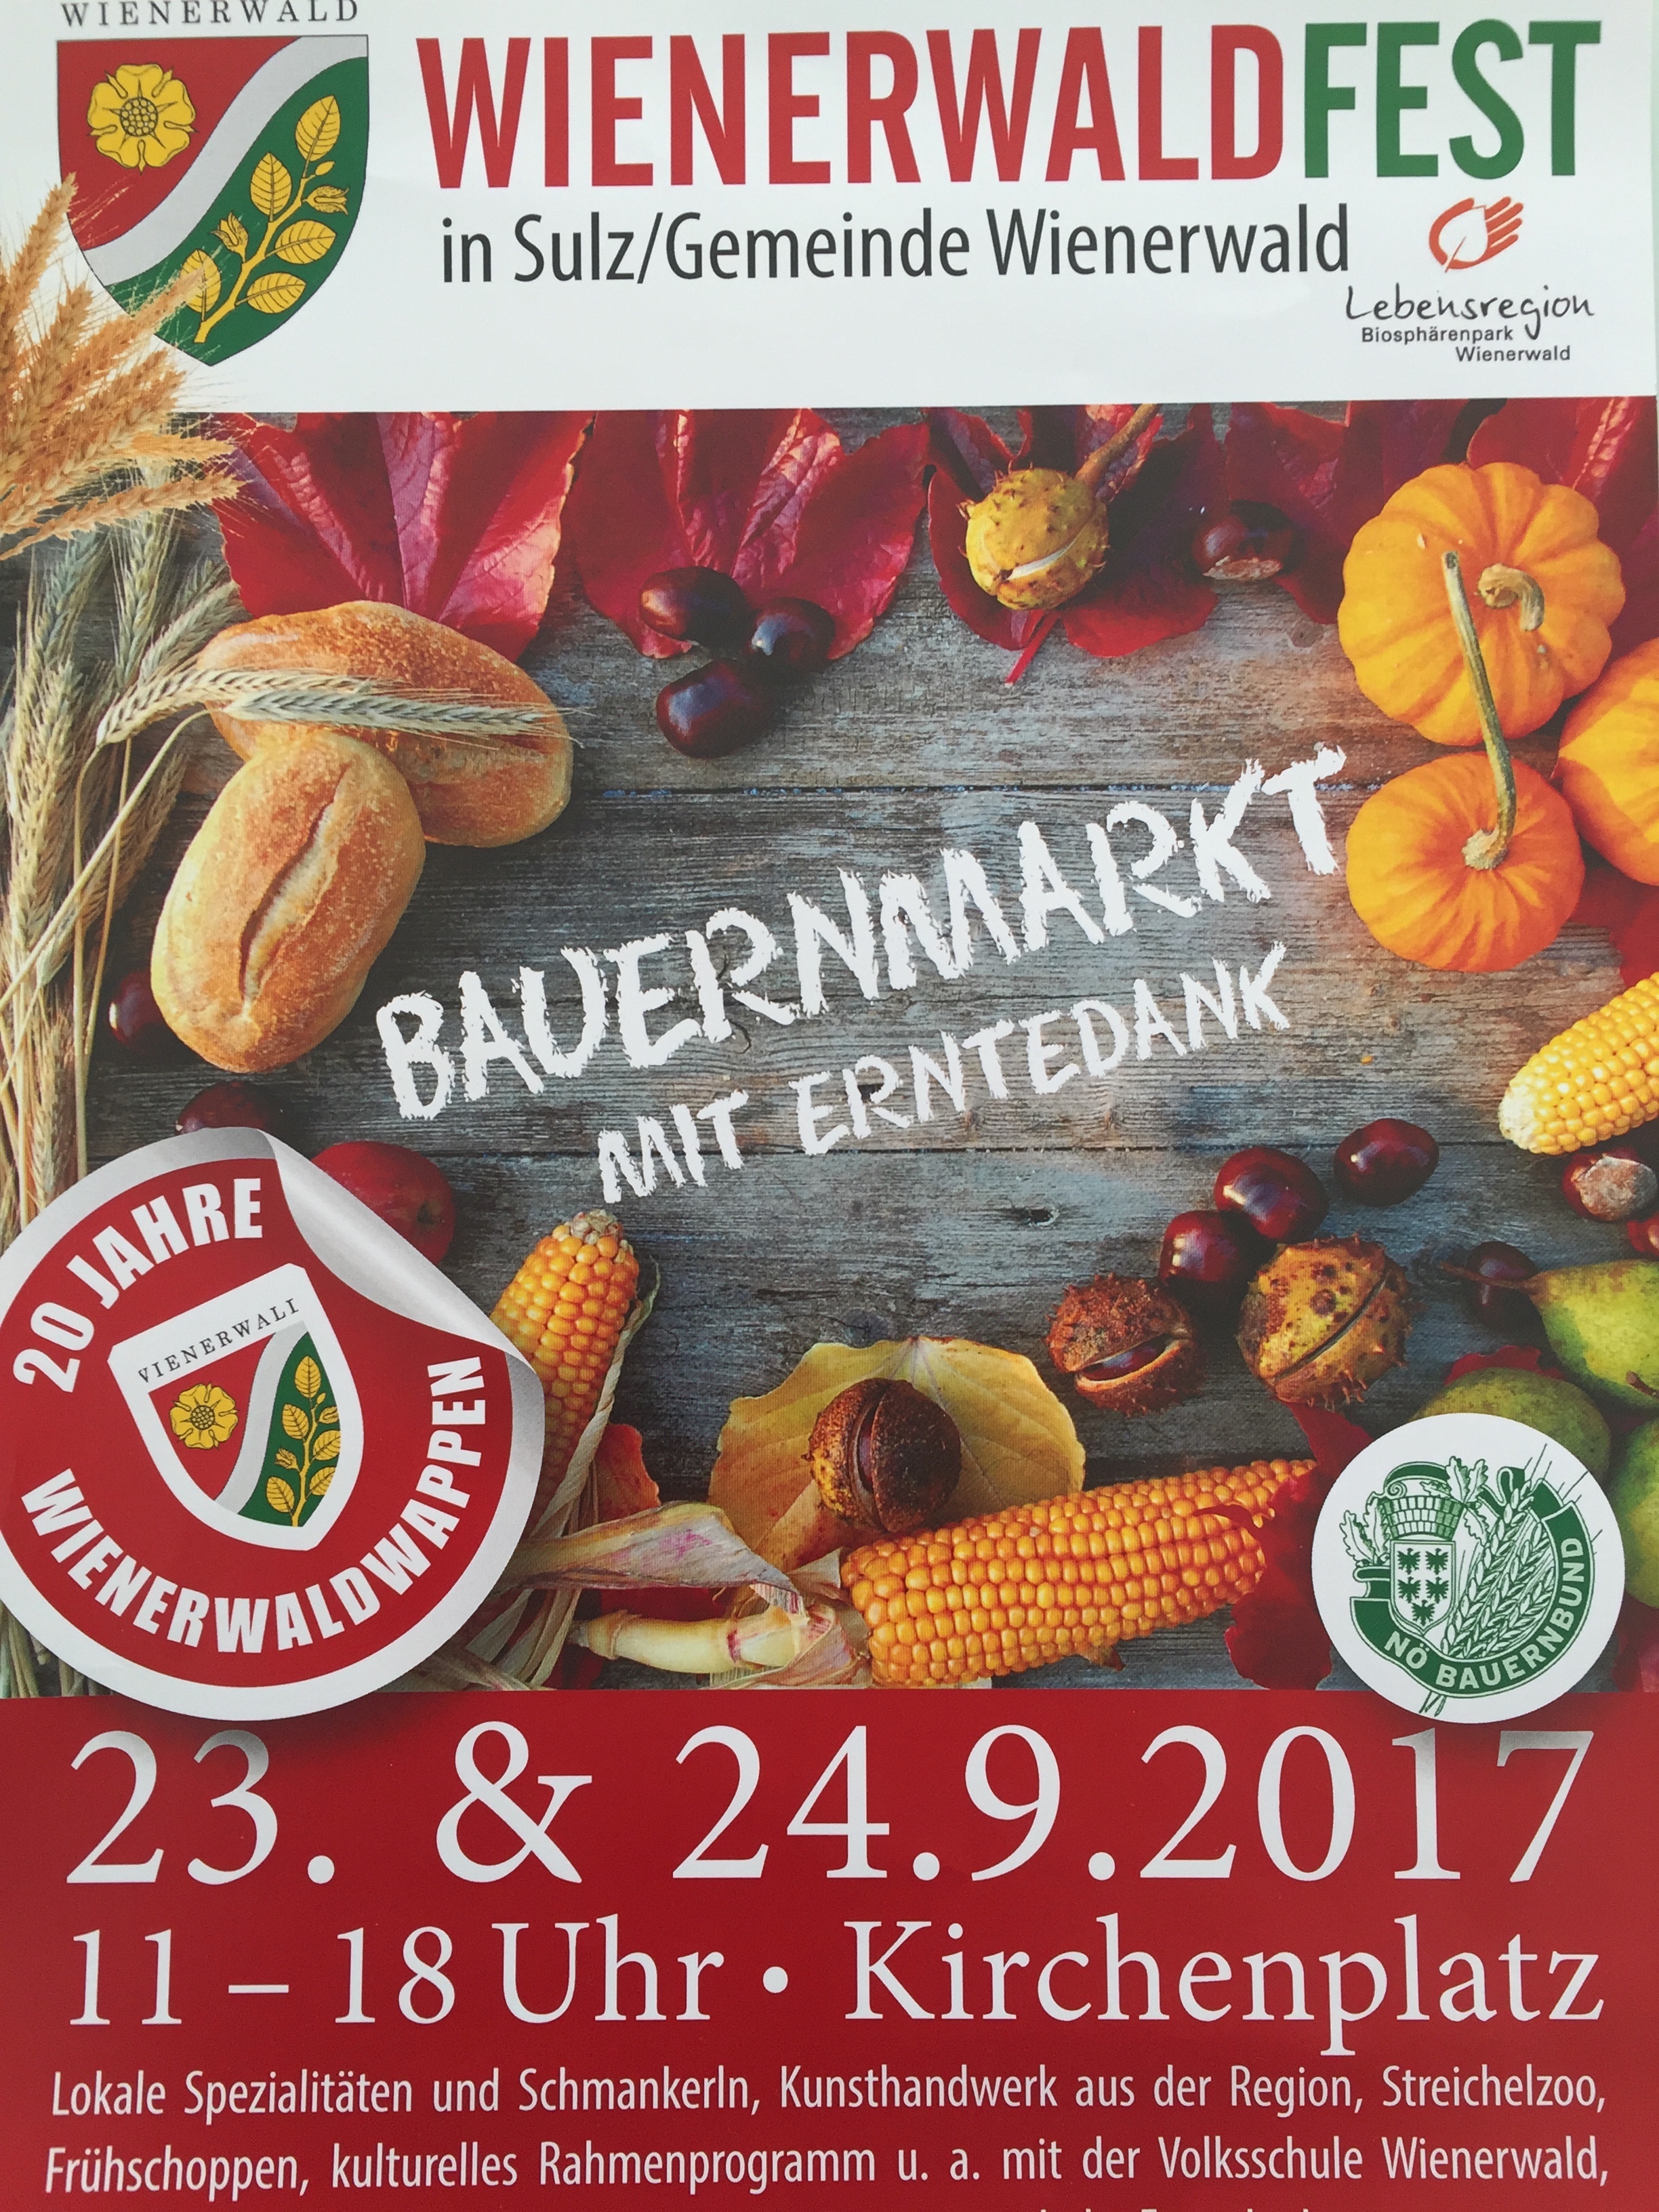 Alpakaprodukte am Wienerwaldfest in Sulz am 23.09 und 24.09.2017 kaufen